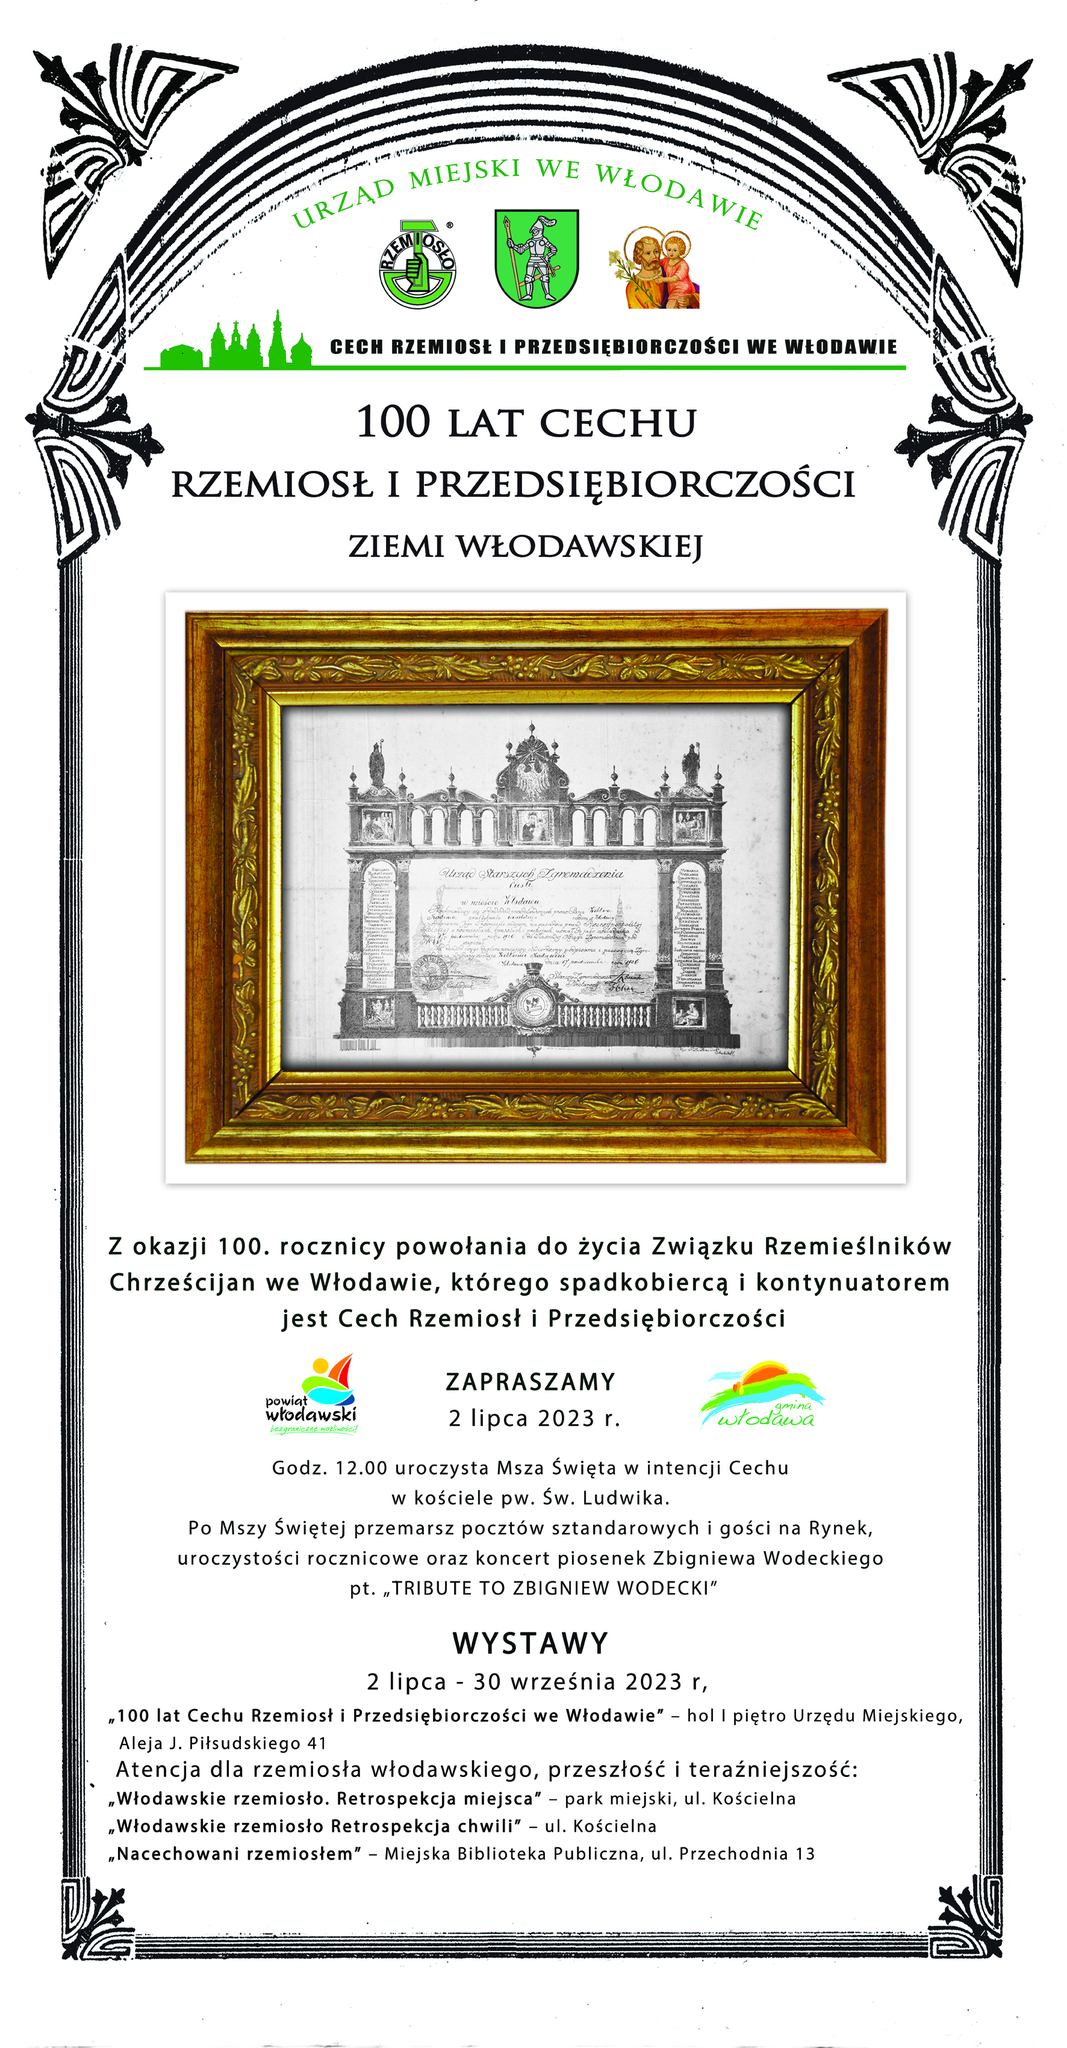 Plakat anonsujący jubileusz Cechu Rzemiosł i Przedsiębiorczości we Włodawie 